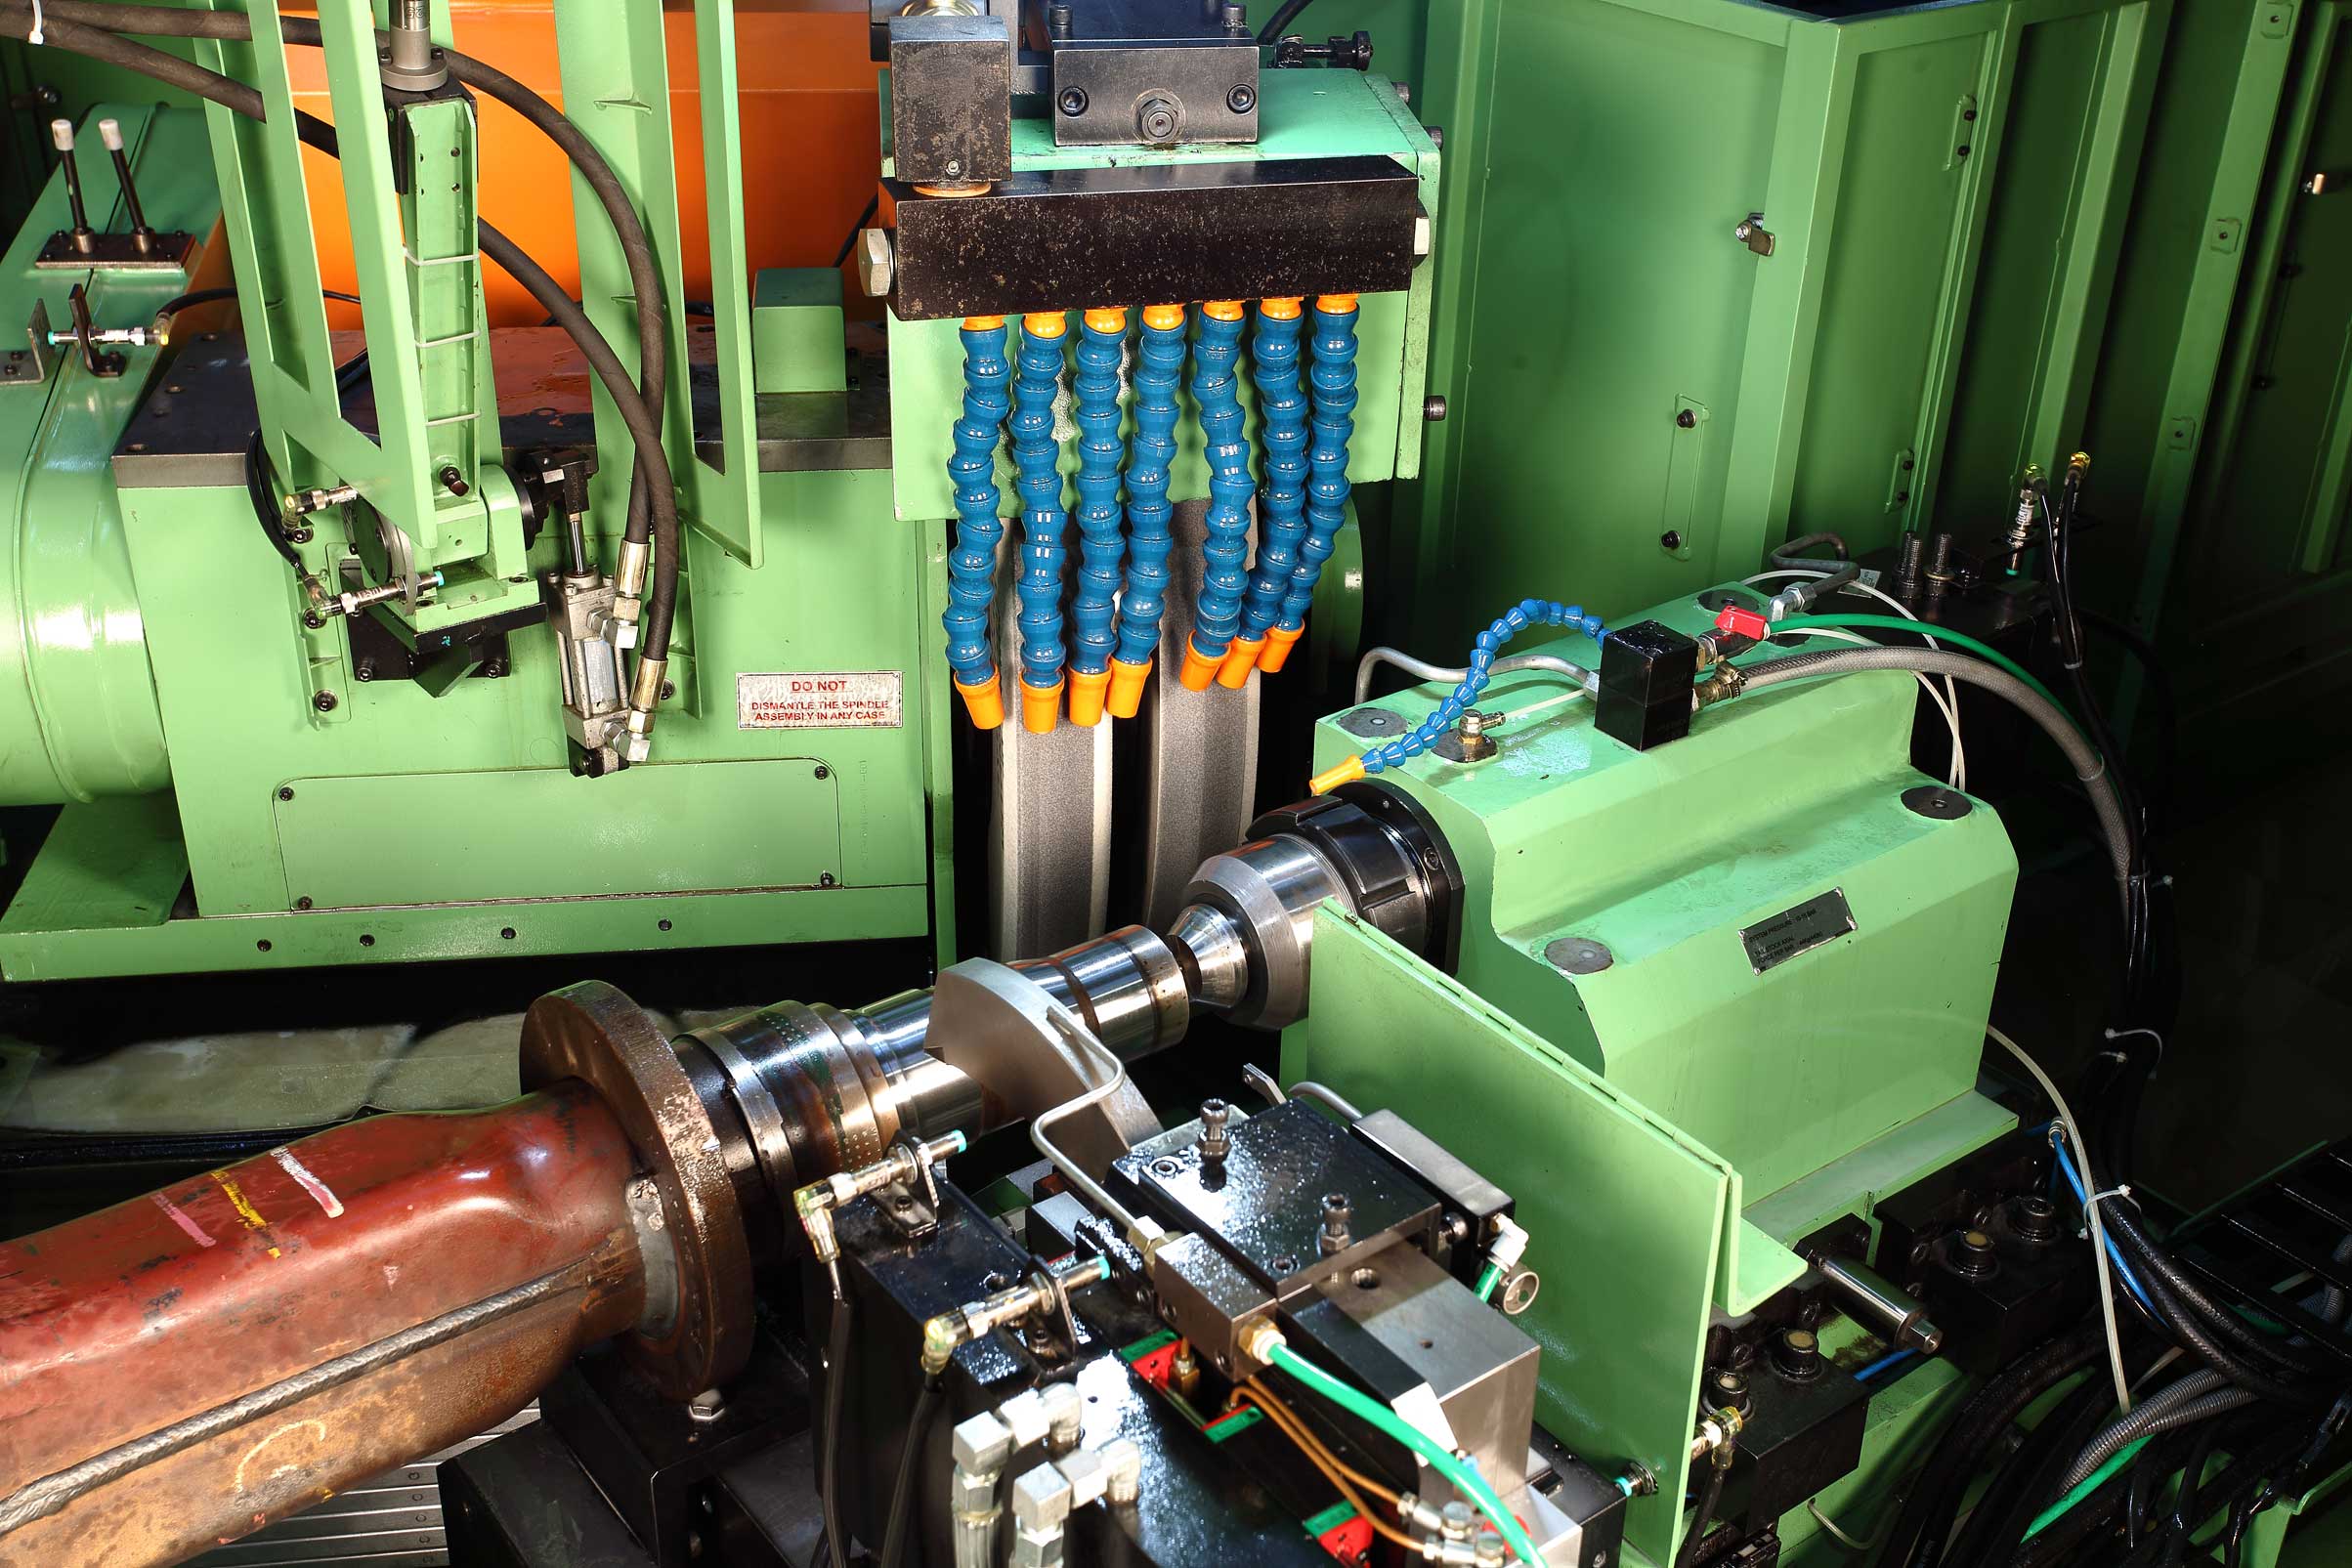 IG-150 CNC Production Universal Grinder